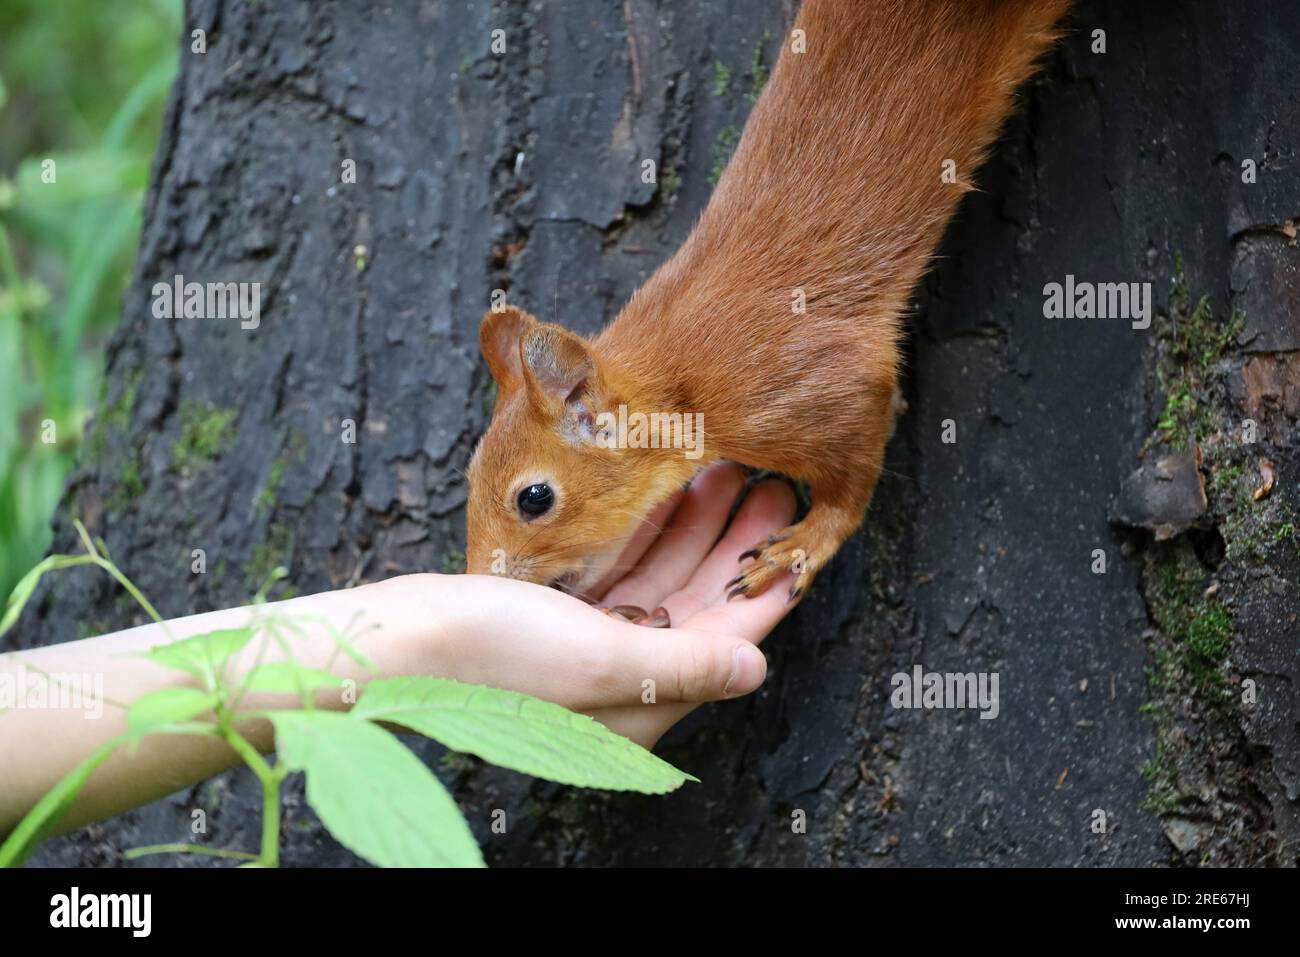 Lo scoiattolo prende una noce da una mano umana. Nutrire animali selvatici in un parco estivo, scoiattolo affamato sul tronco degli alberi, fiducia e cura Foto Stock